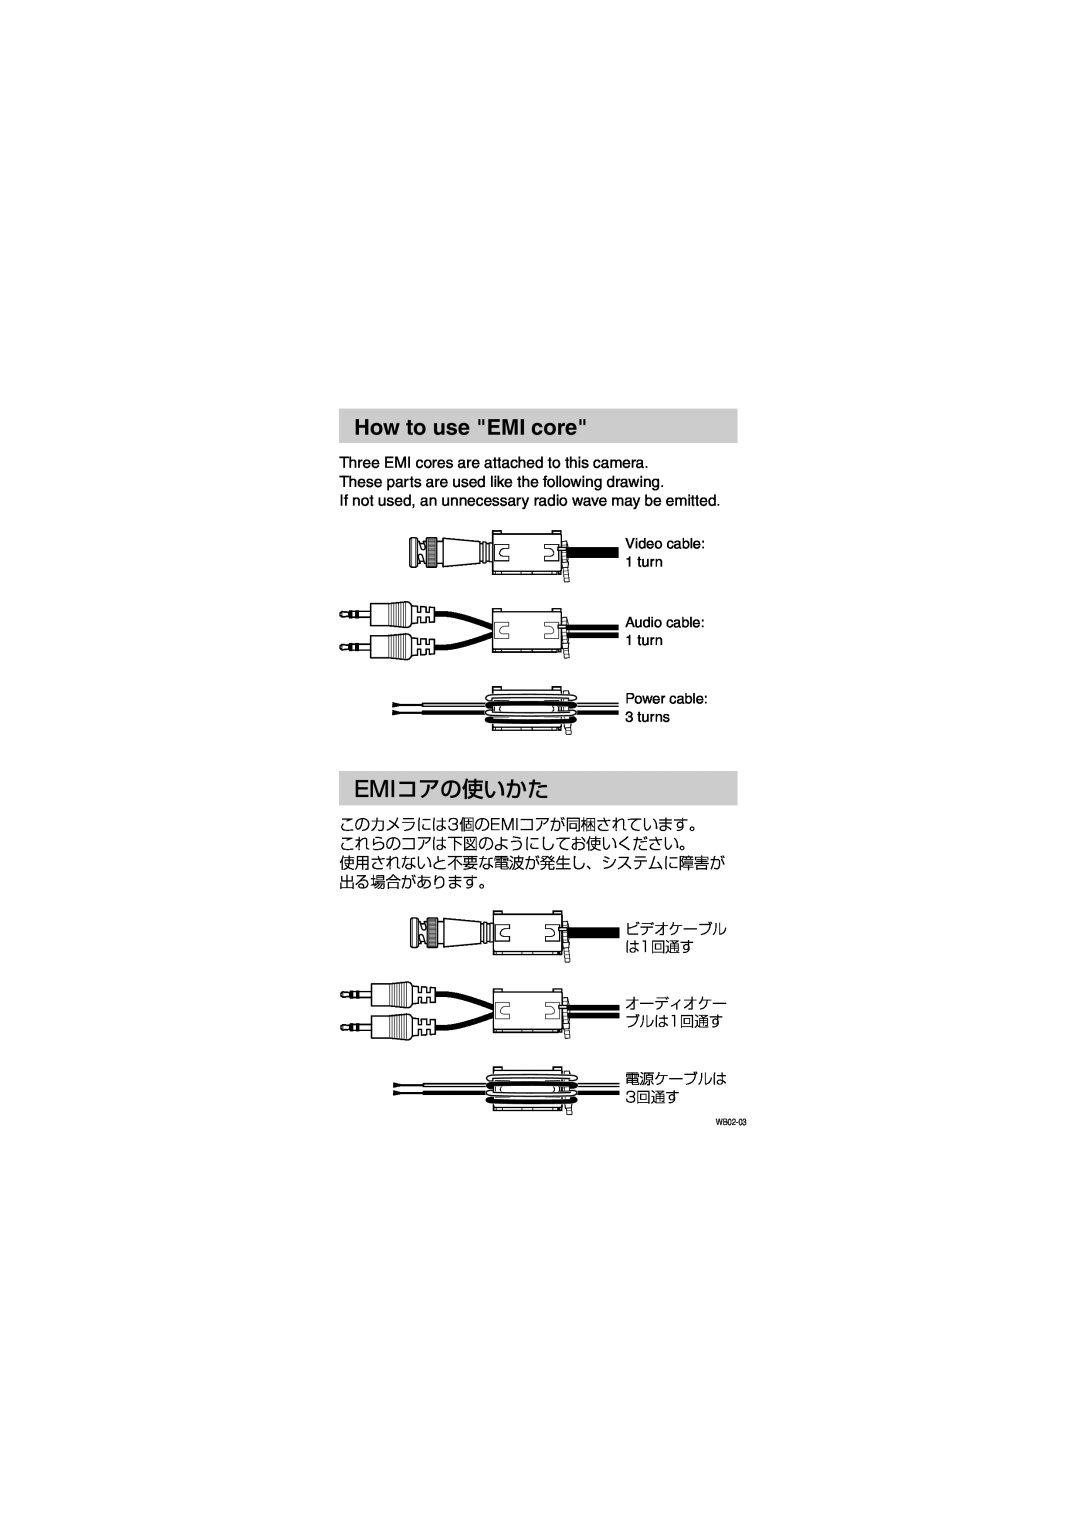 Toshiba IK-WB02A manual How to use EMI core, Emiコアの使いかた, ビデオケーブル は1回通す オーディオケー ブルは1回通す 電源ケーブルは 3回通す 